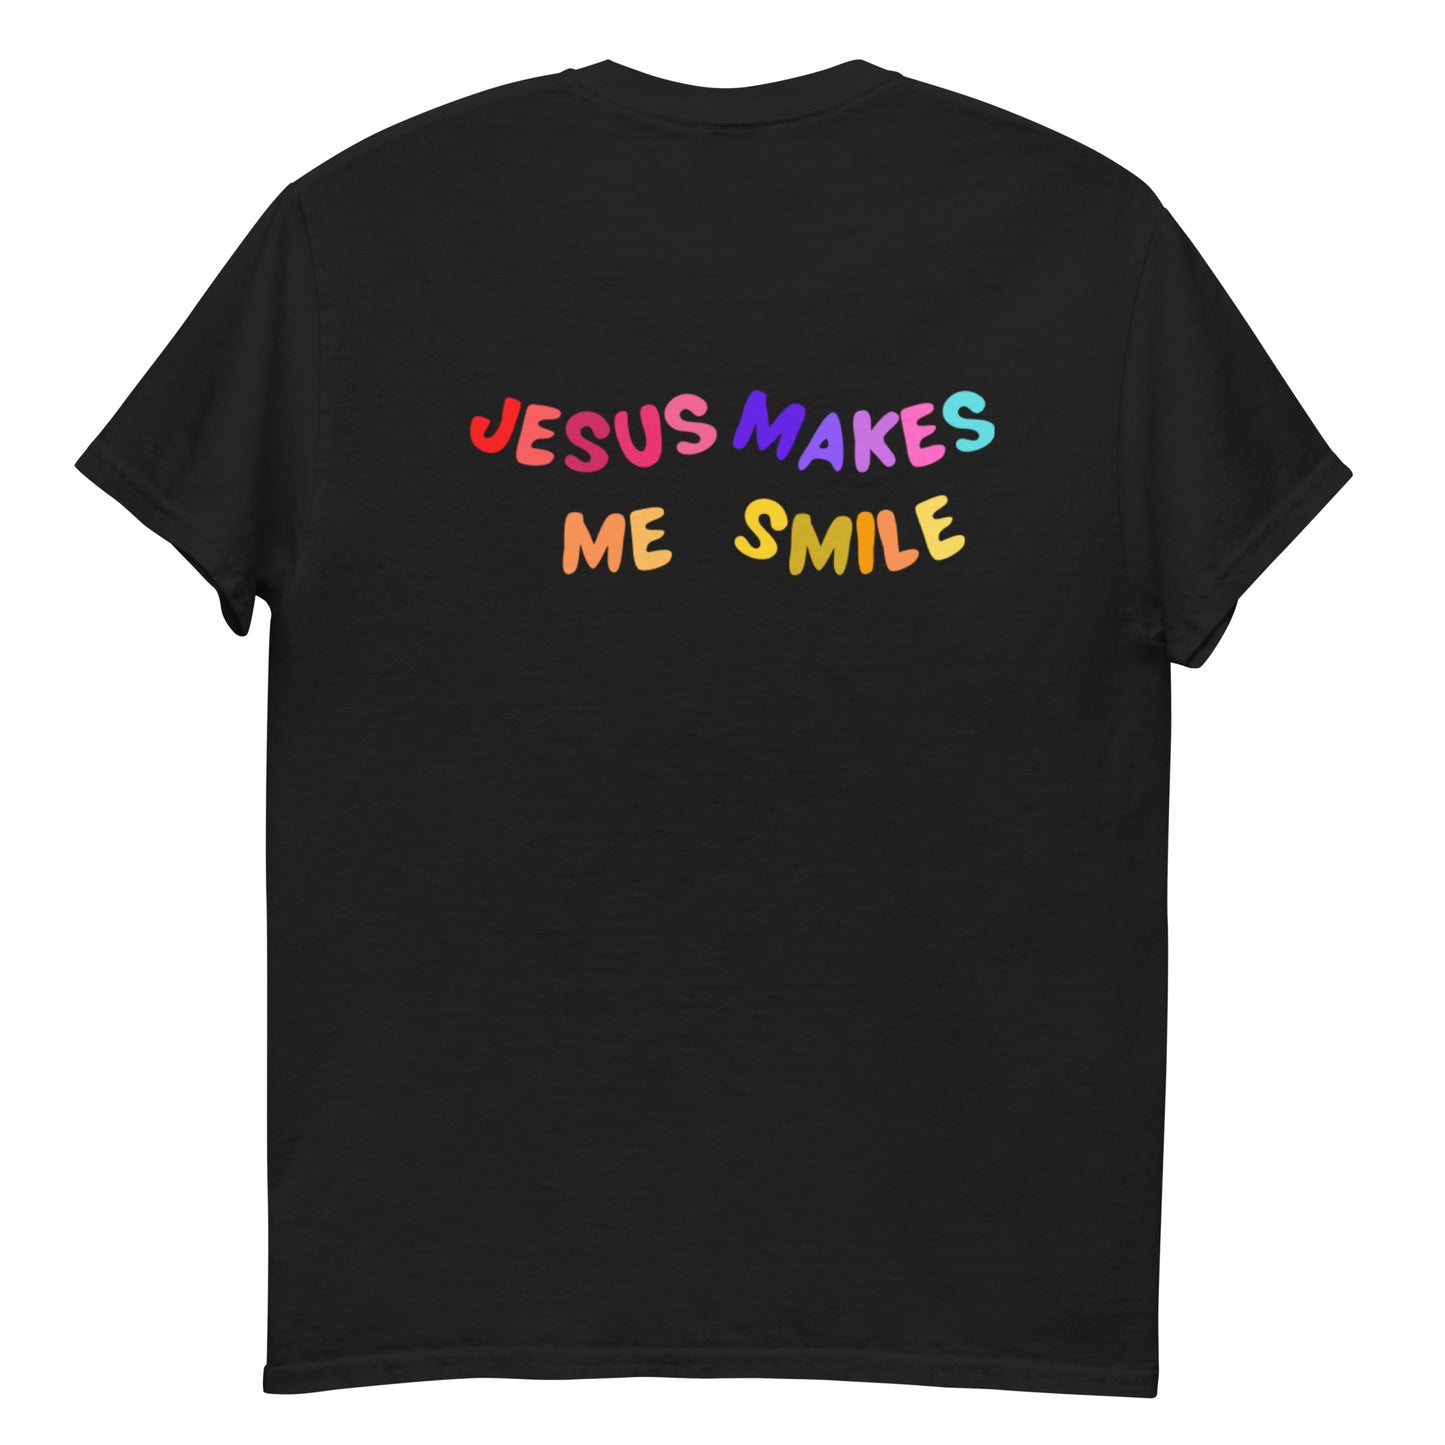 Jesus Makes Me Smile - Black / S - Shirts & Tops